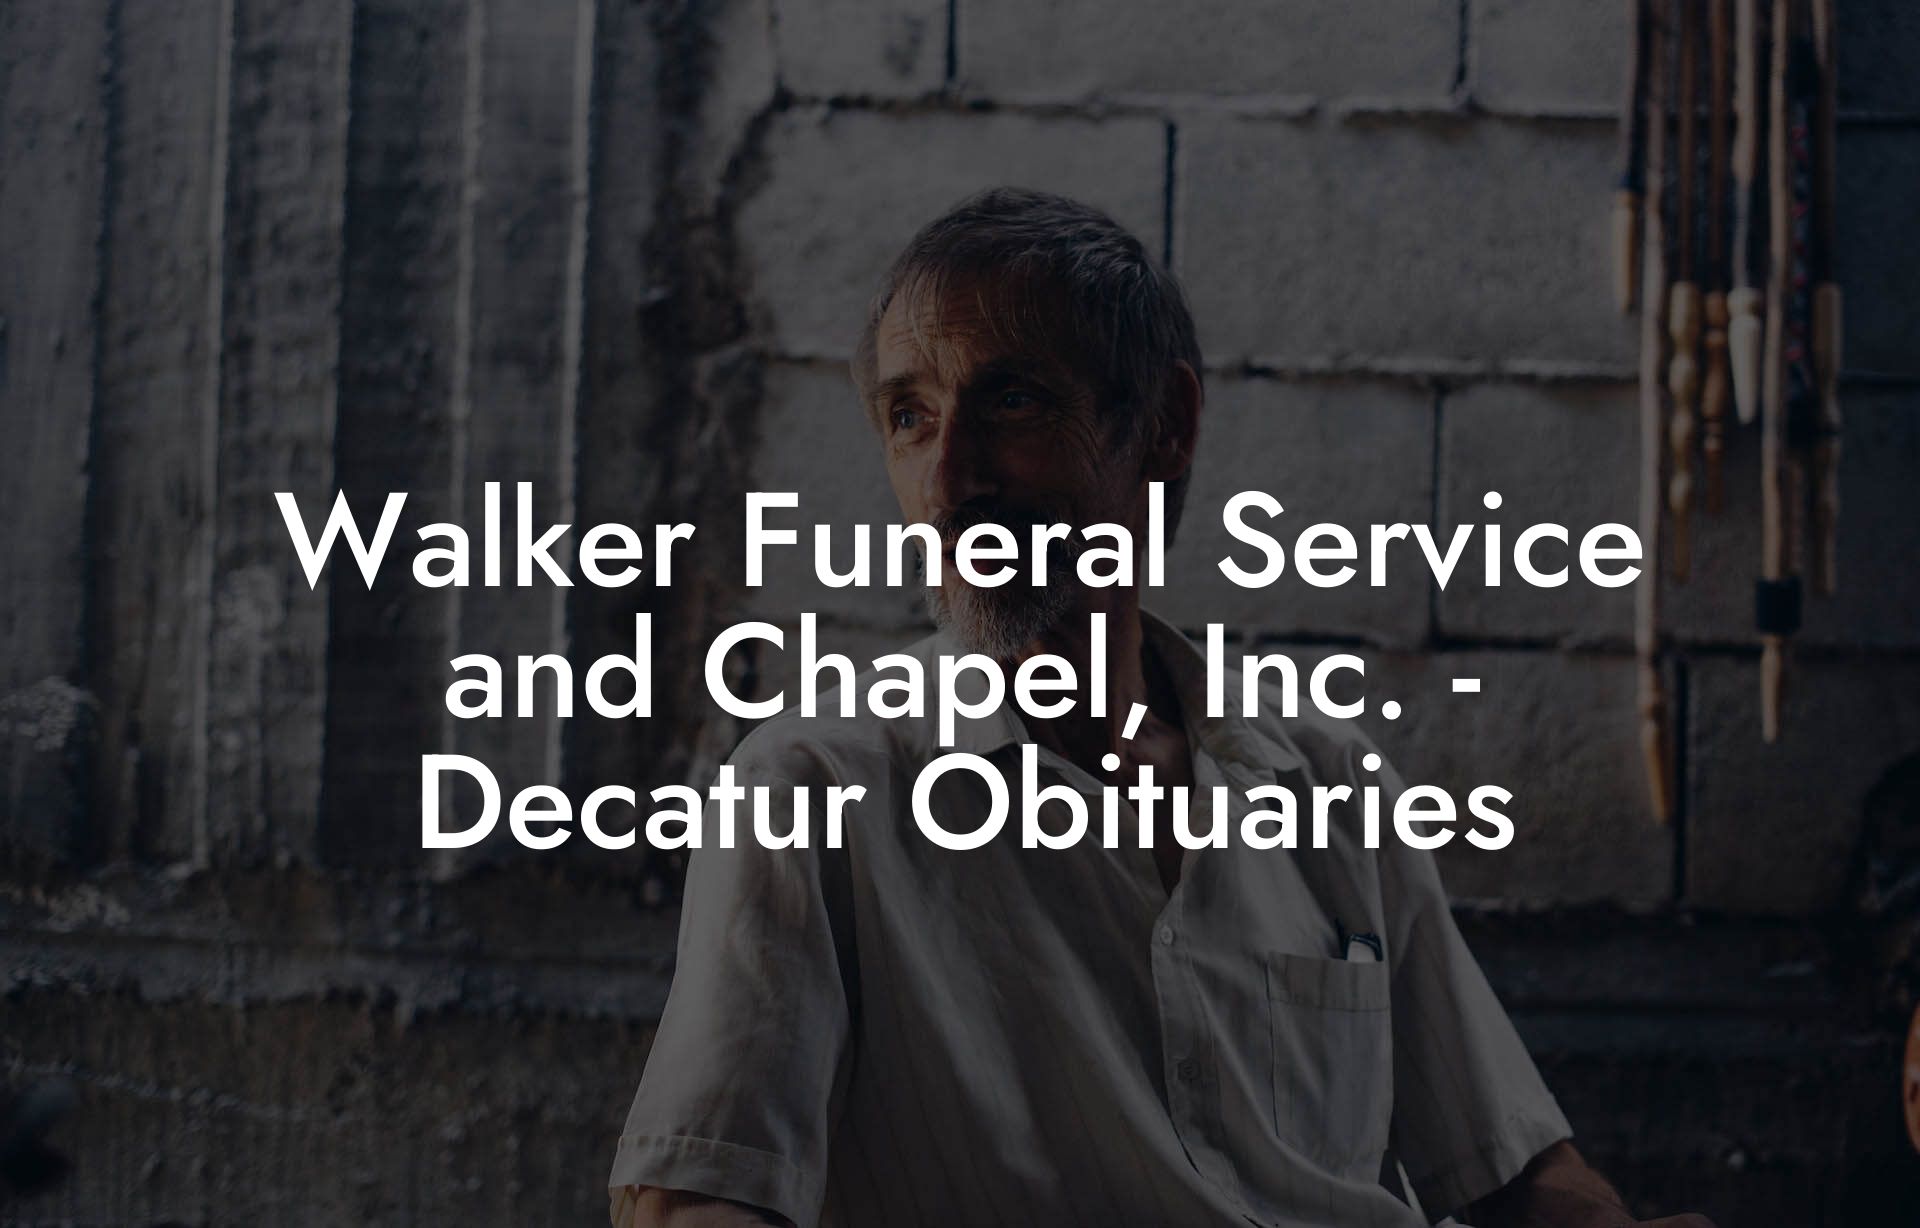 Walker Funeral Service and Chapel, Inc. - Decatur Obituaries